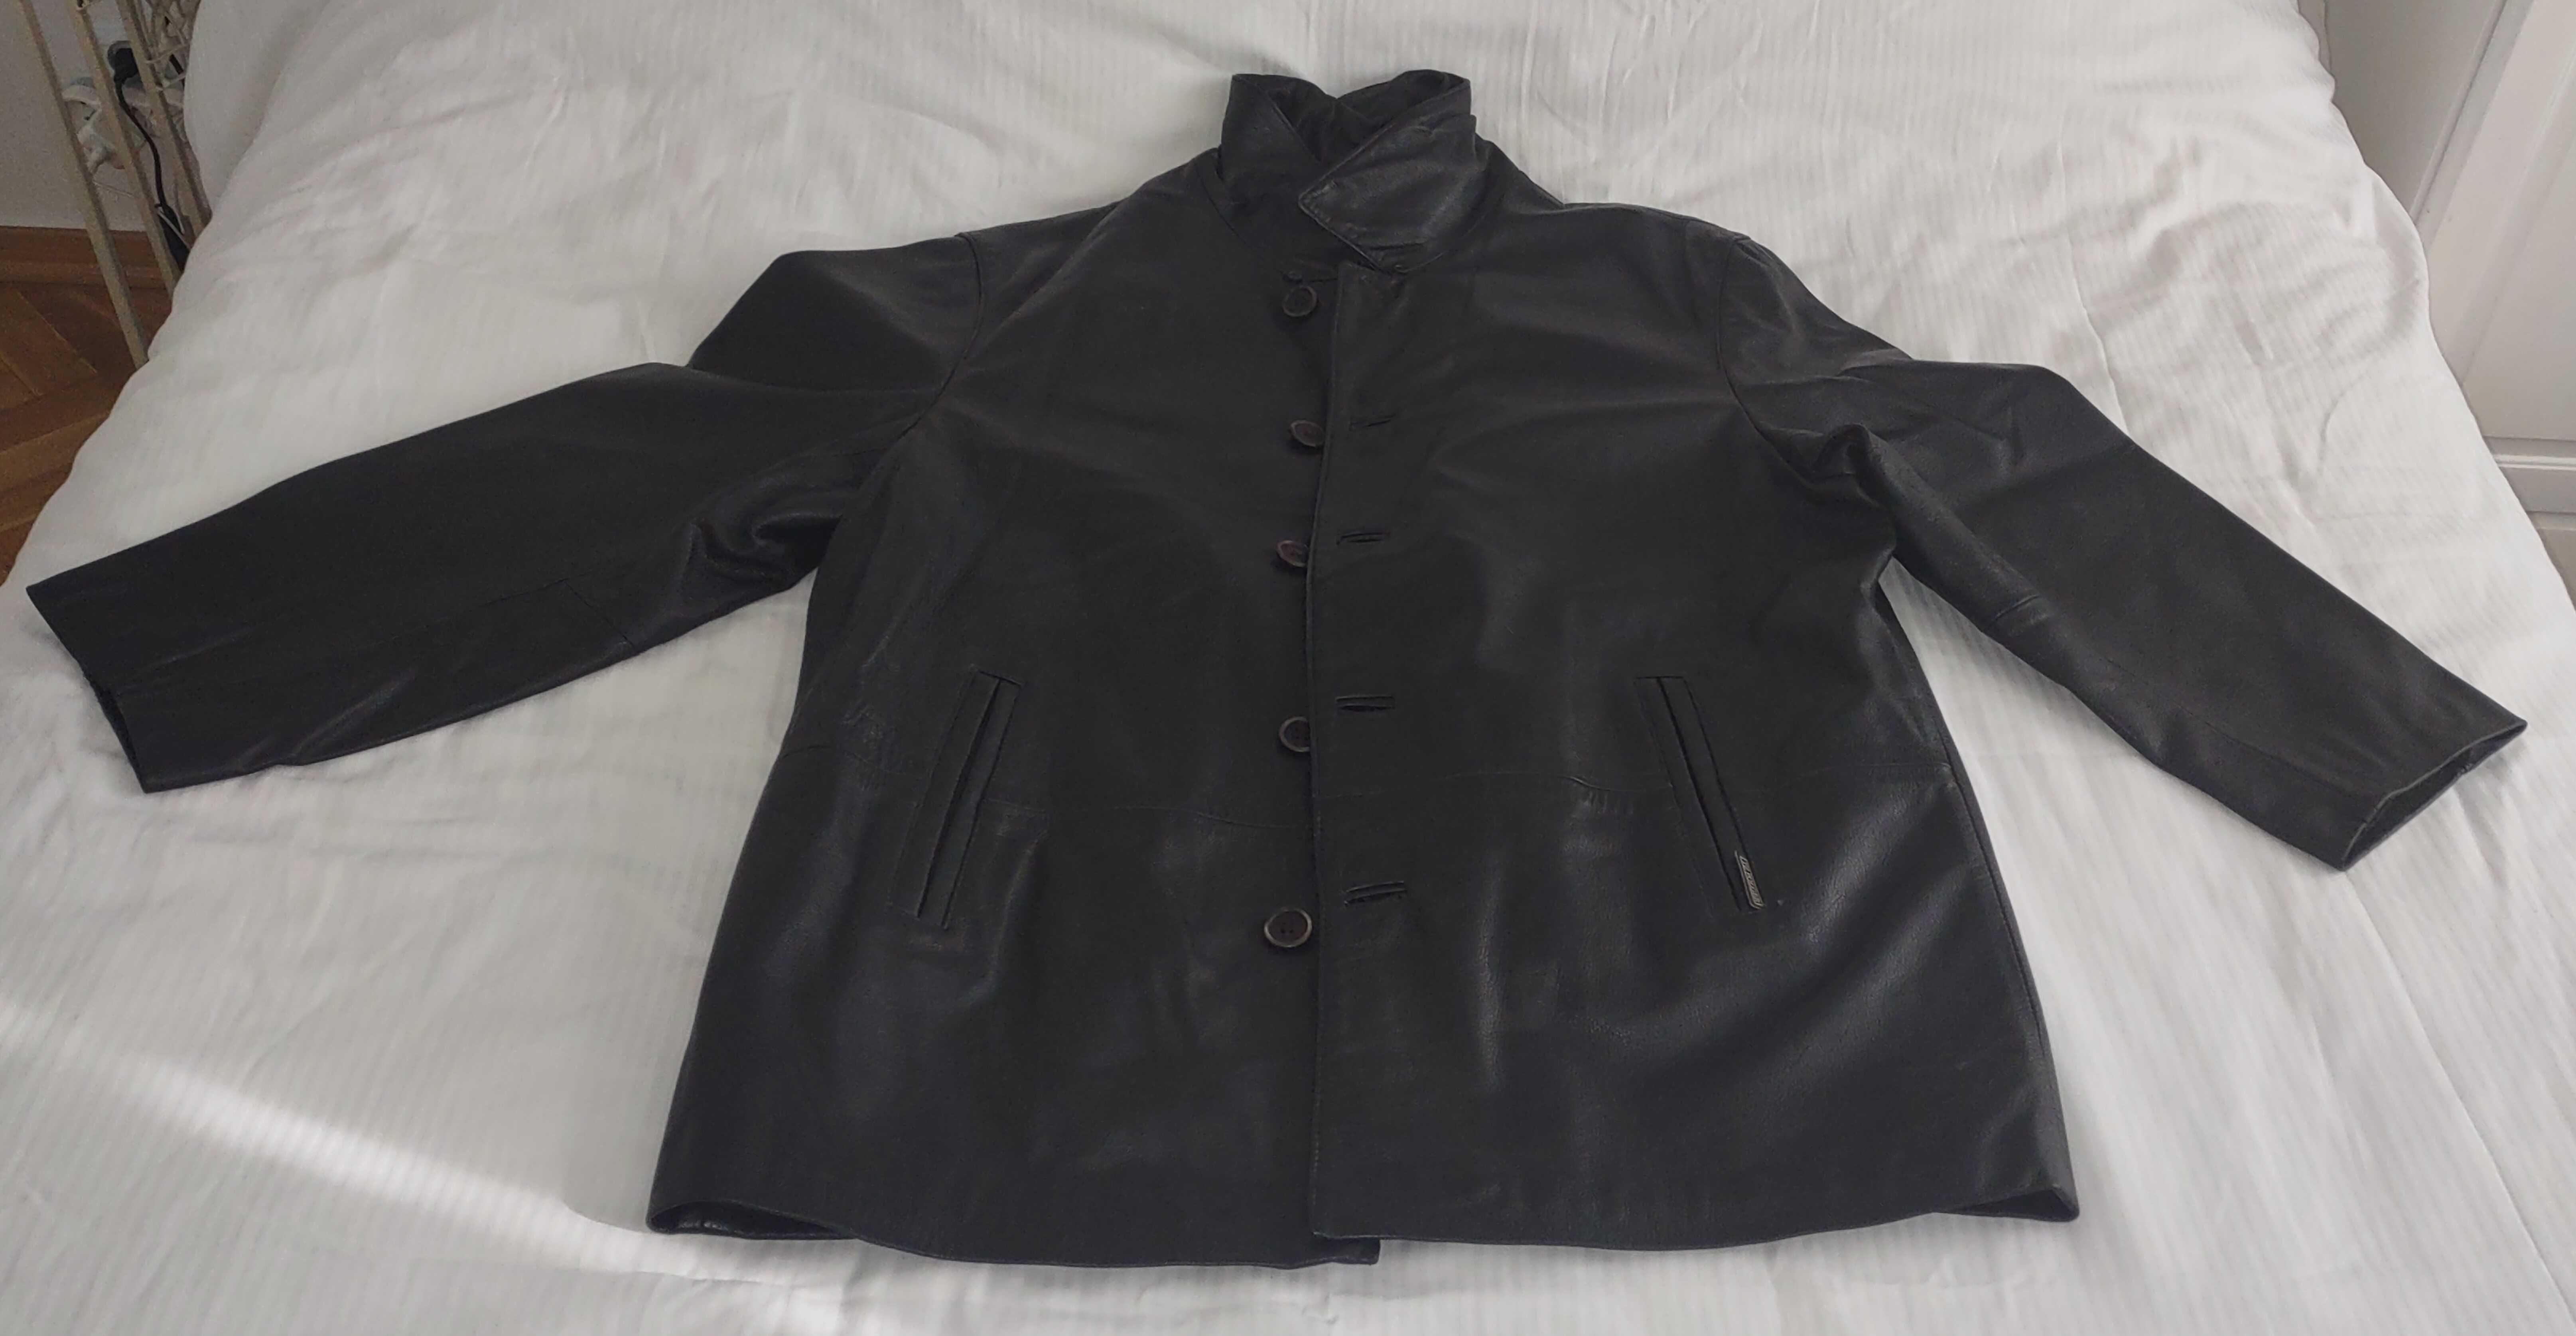 kurtka skórzana czarna z podpinką, męska, używana, rozmiar 54